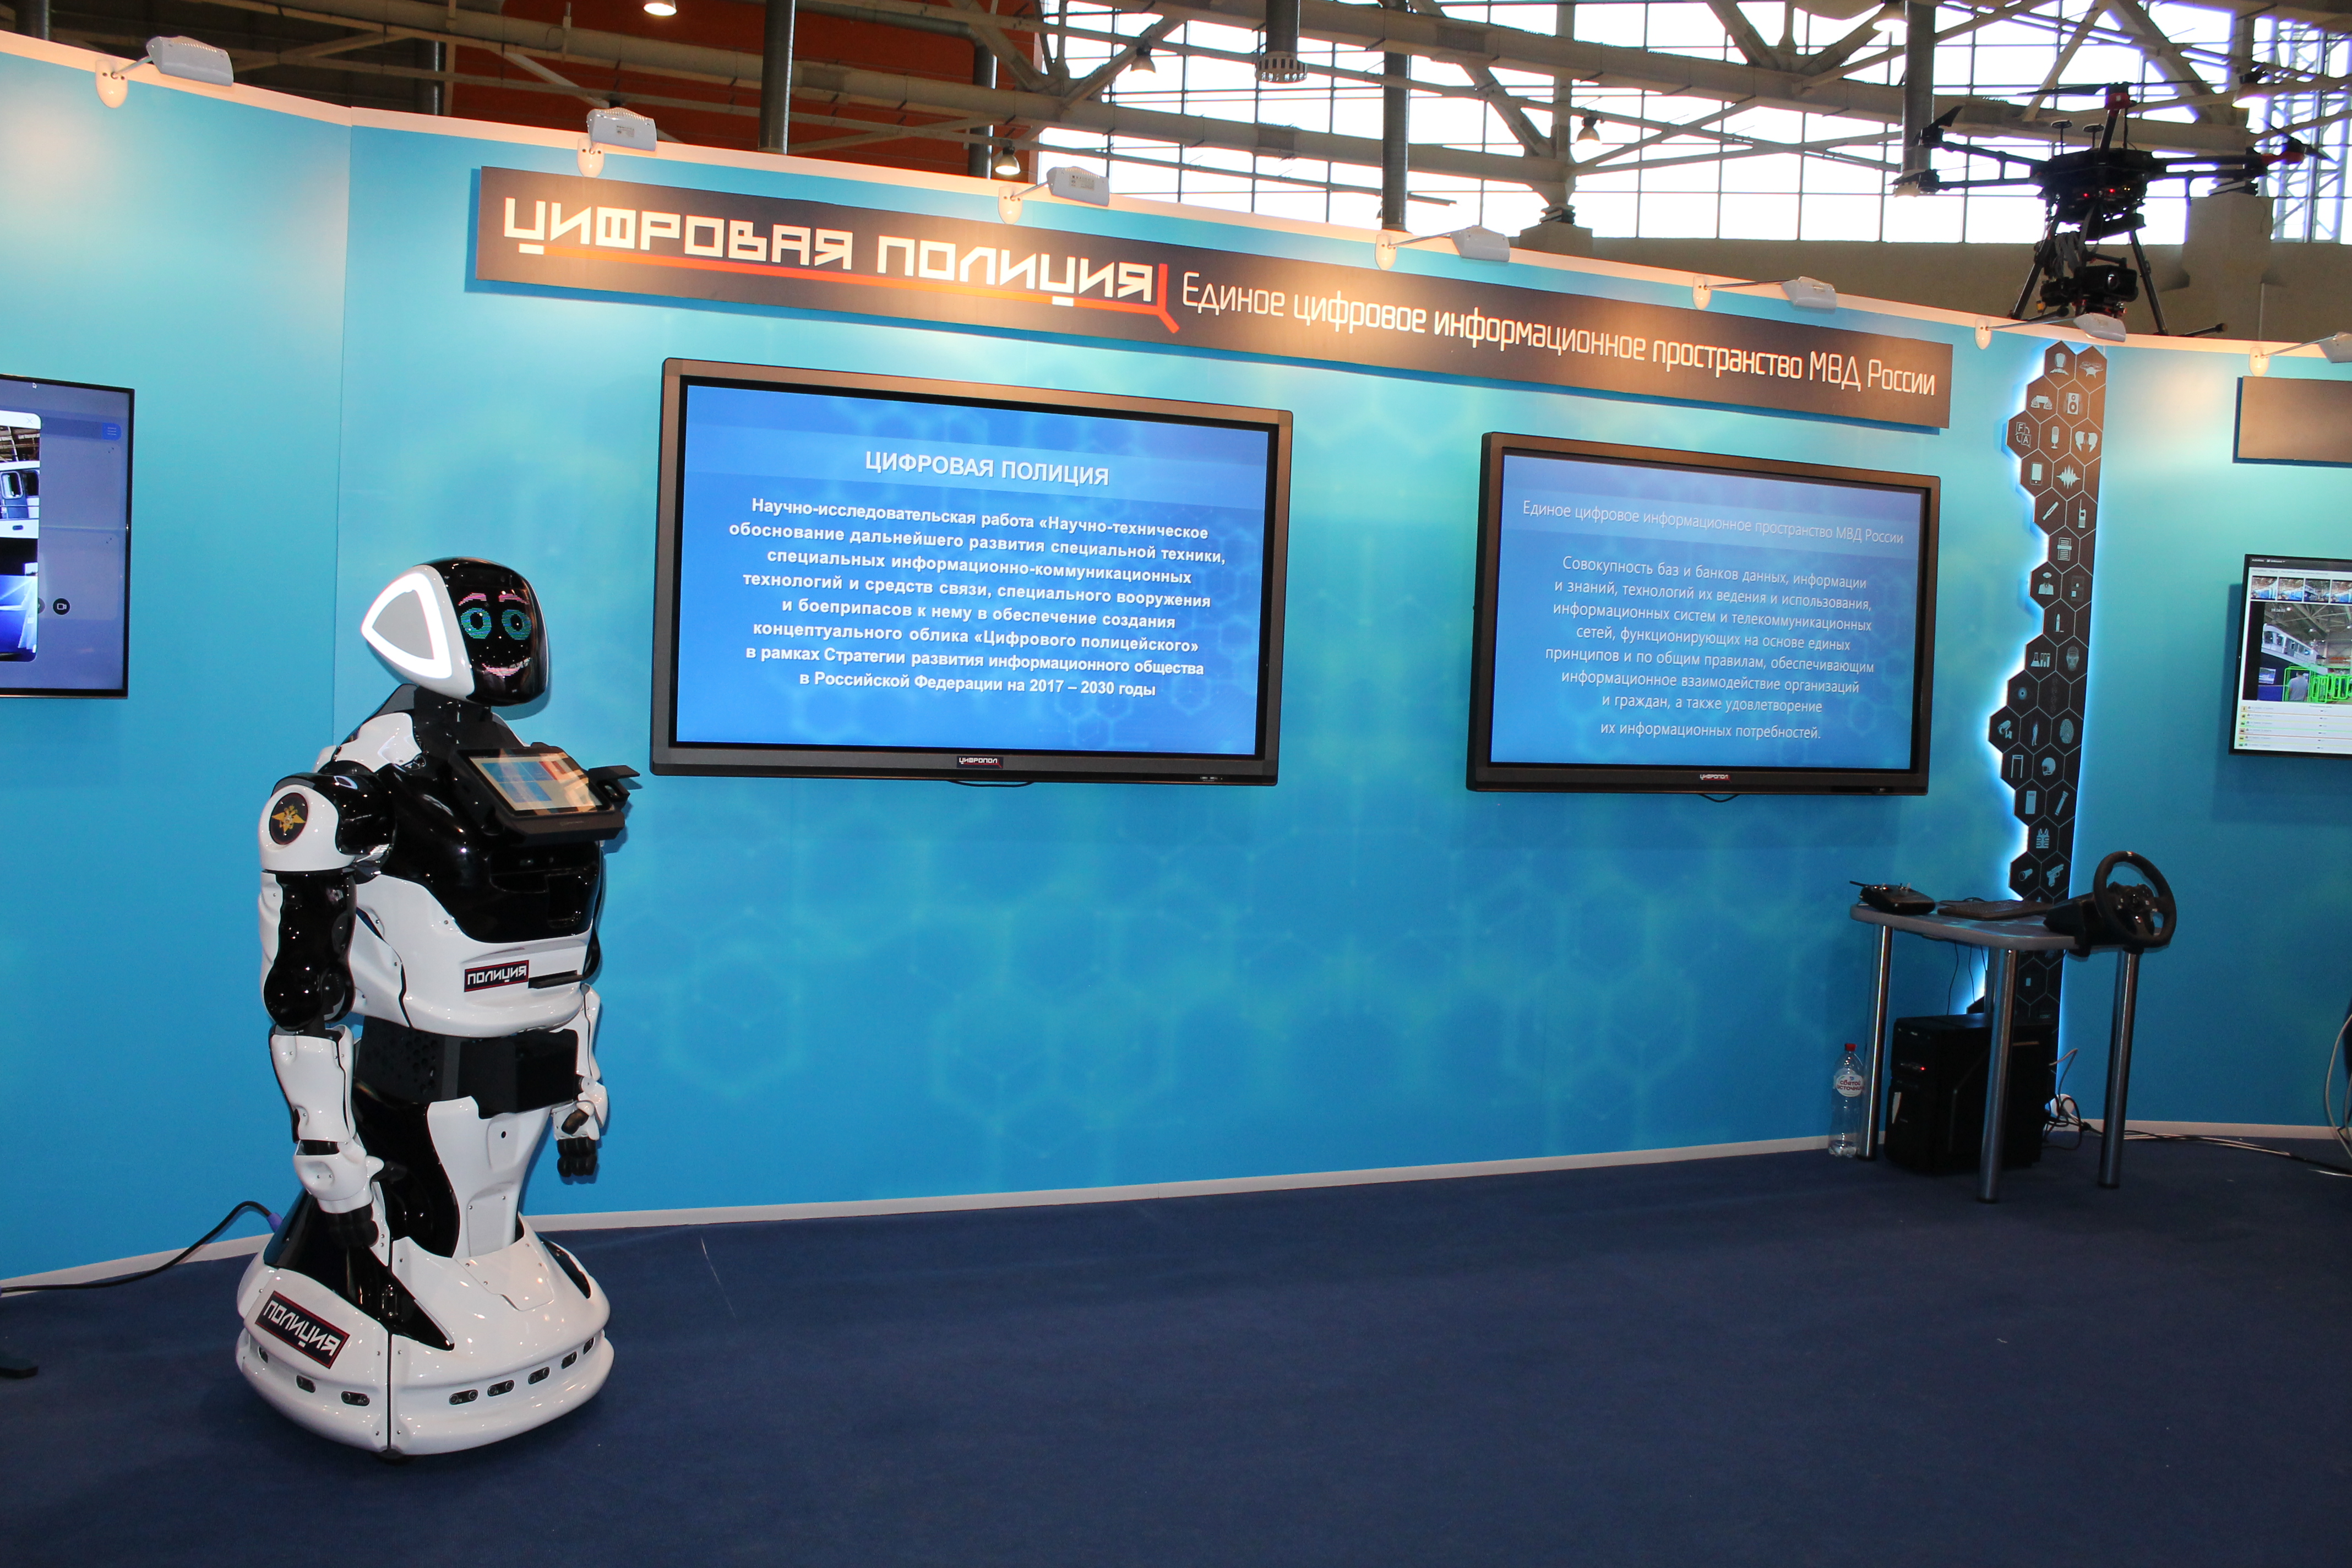 Роботы для обеспечения безопасности. Робот полицейский Промобот. Робот Promobot v.4. Искусственный интеллект в полиции. Роботы в России.